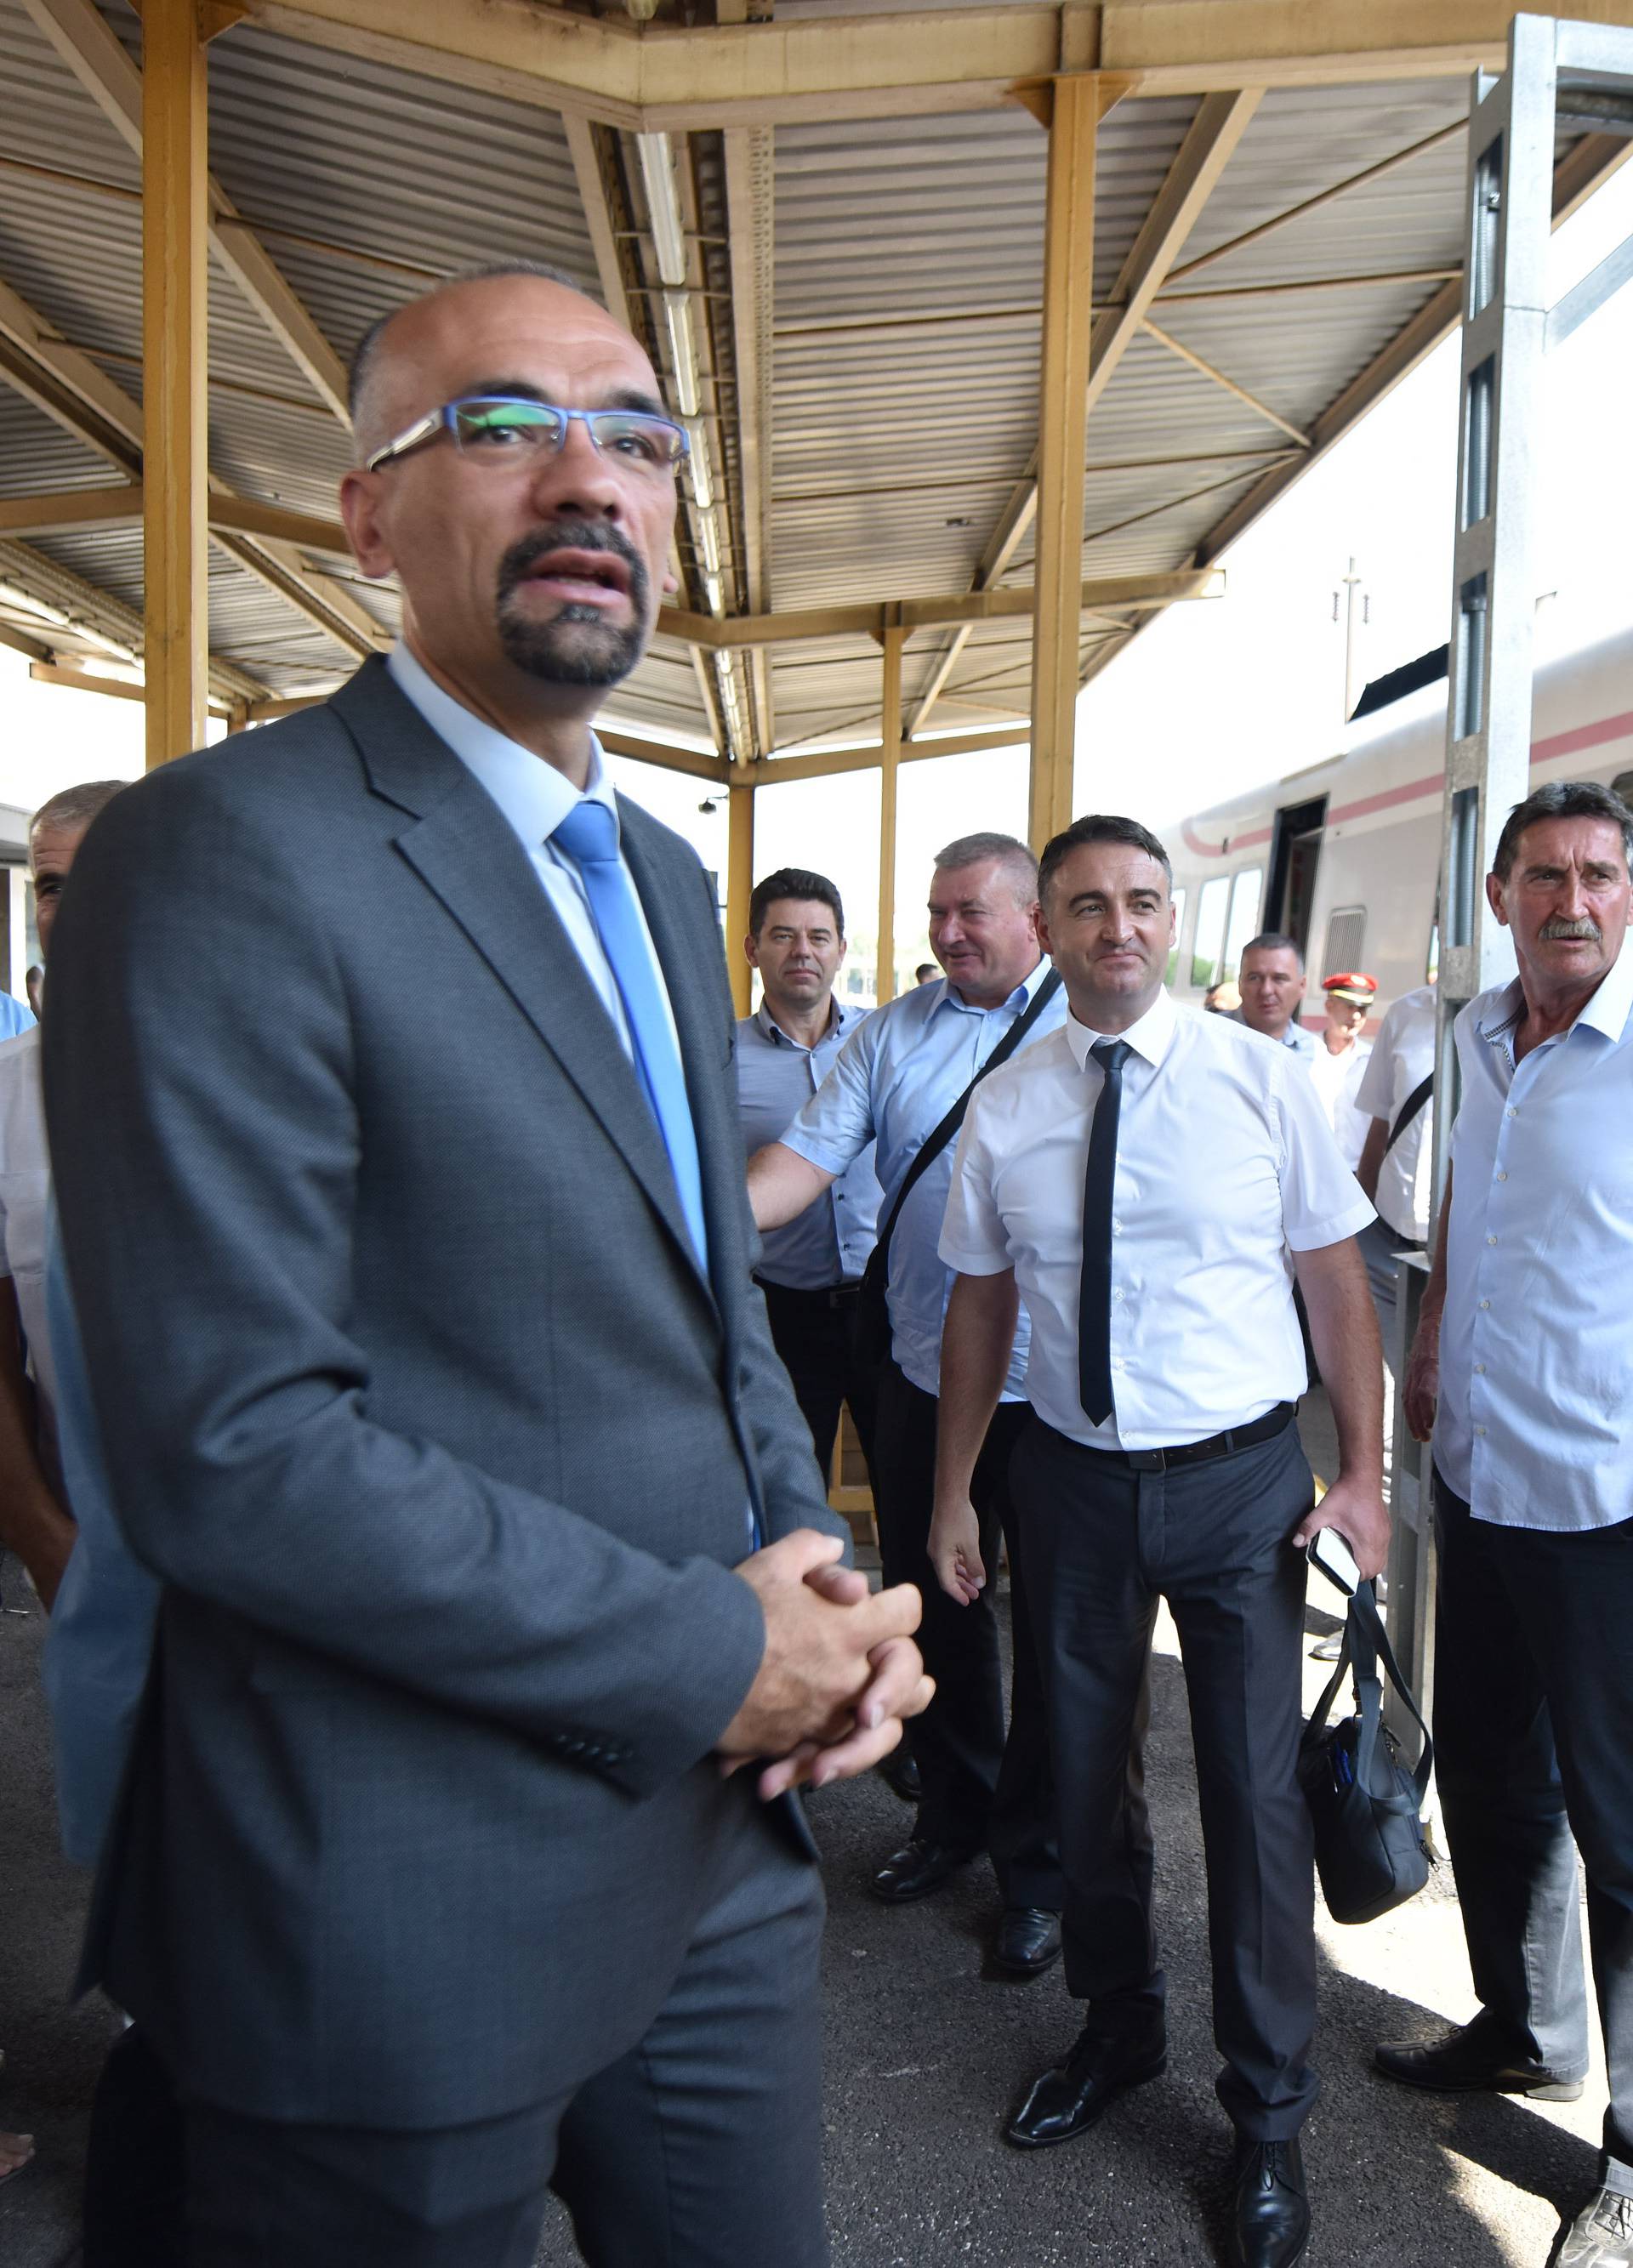 Vlak slobode krenuo u Knin: 'Označio je jedinstvo nacije'